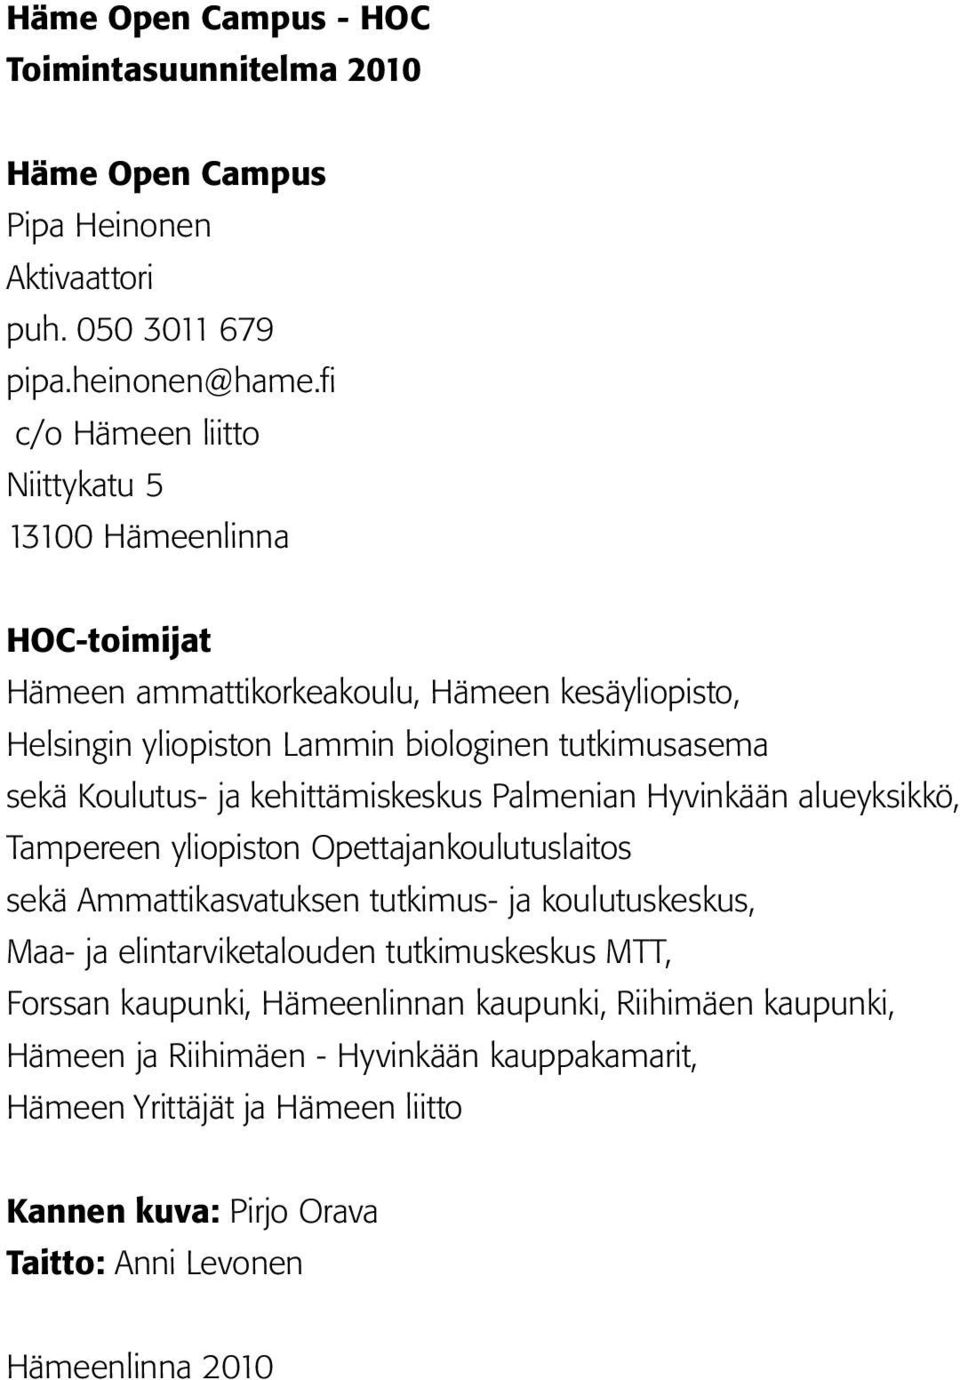 Koulutus- ja kehittämiskeskus Palmenian Hyvinkään alueyksikkö, Tampereen yliopiston Opettajankoulutuslaitos sekä Ammattikasvatuksen tutkimus- ja koulutuskeskus, Maa- ja